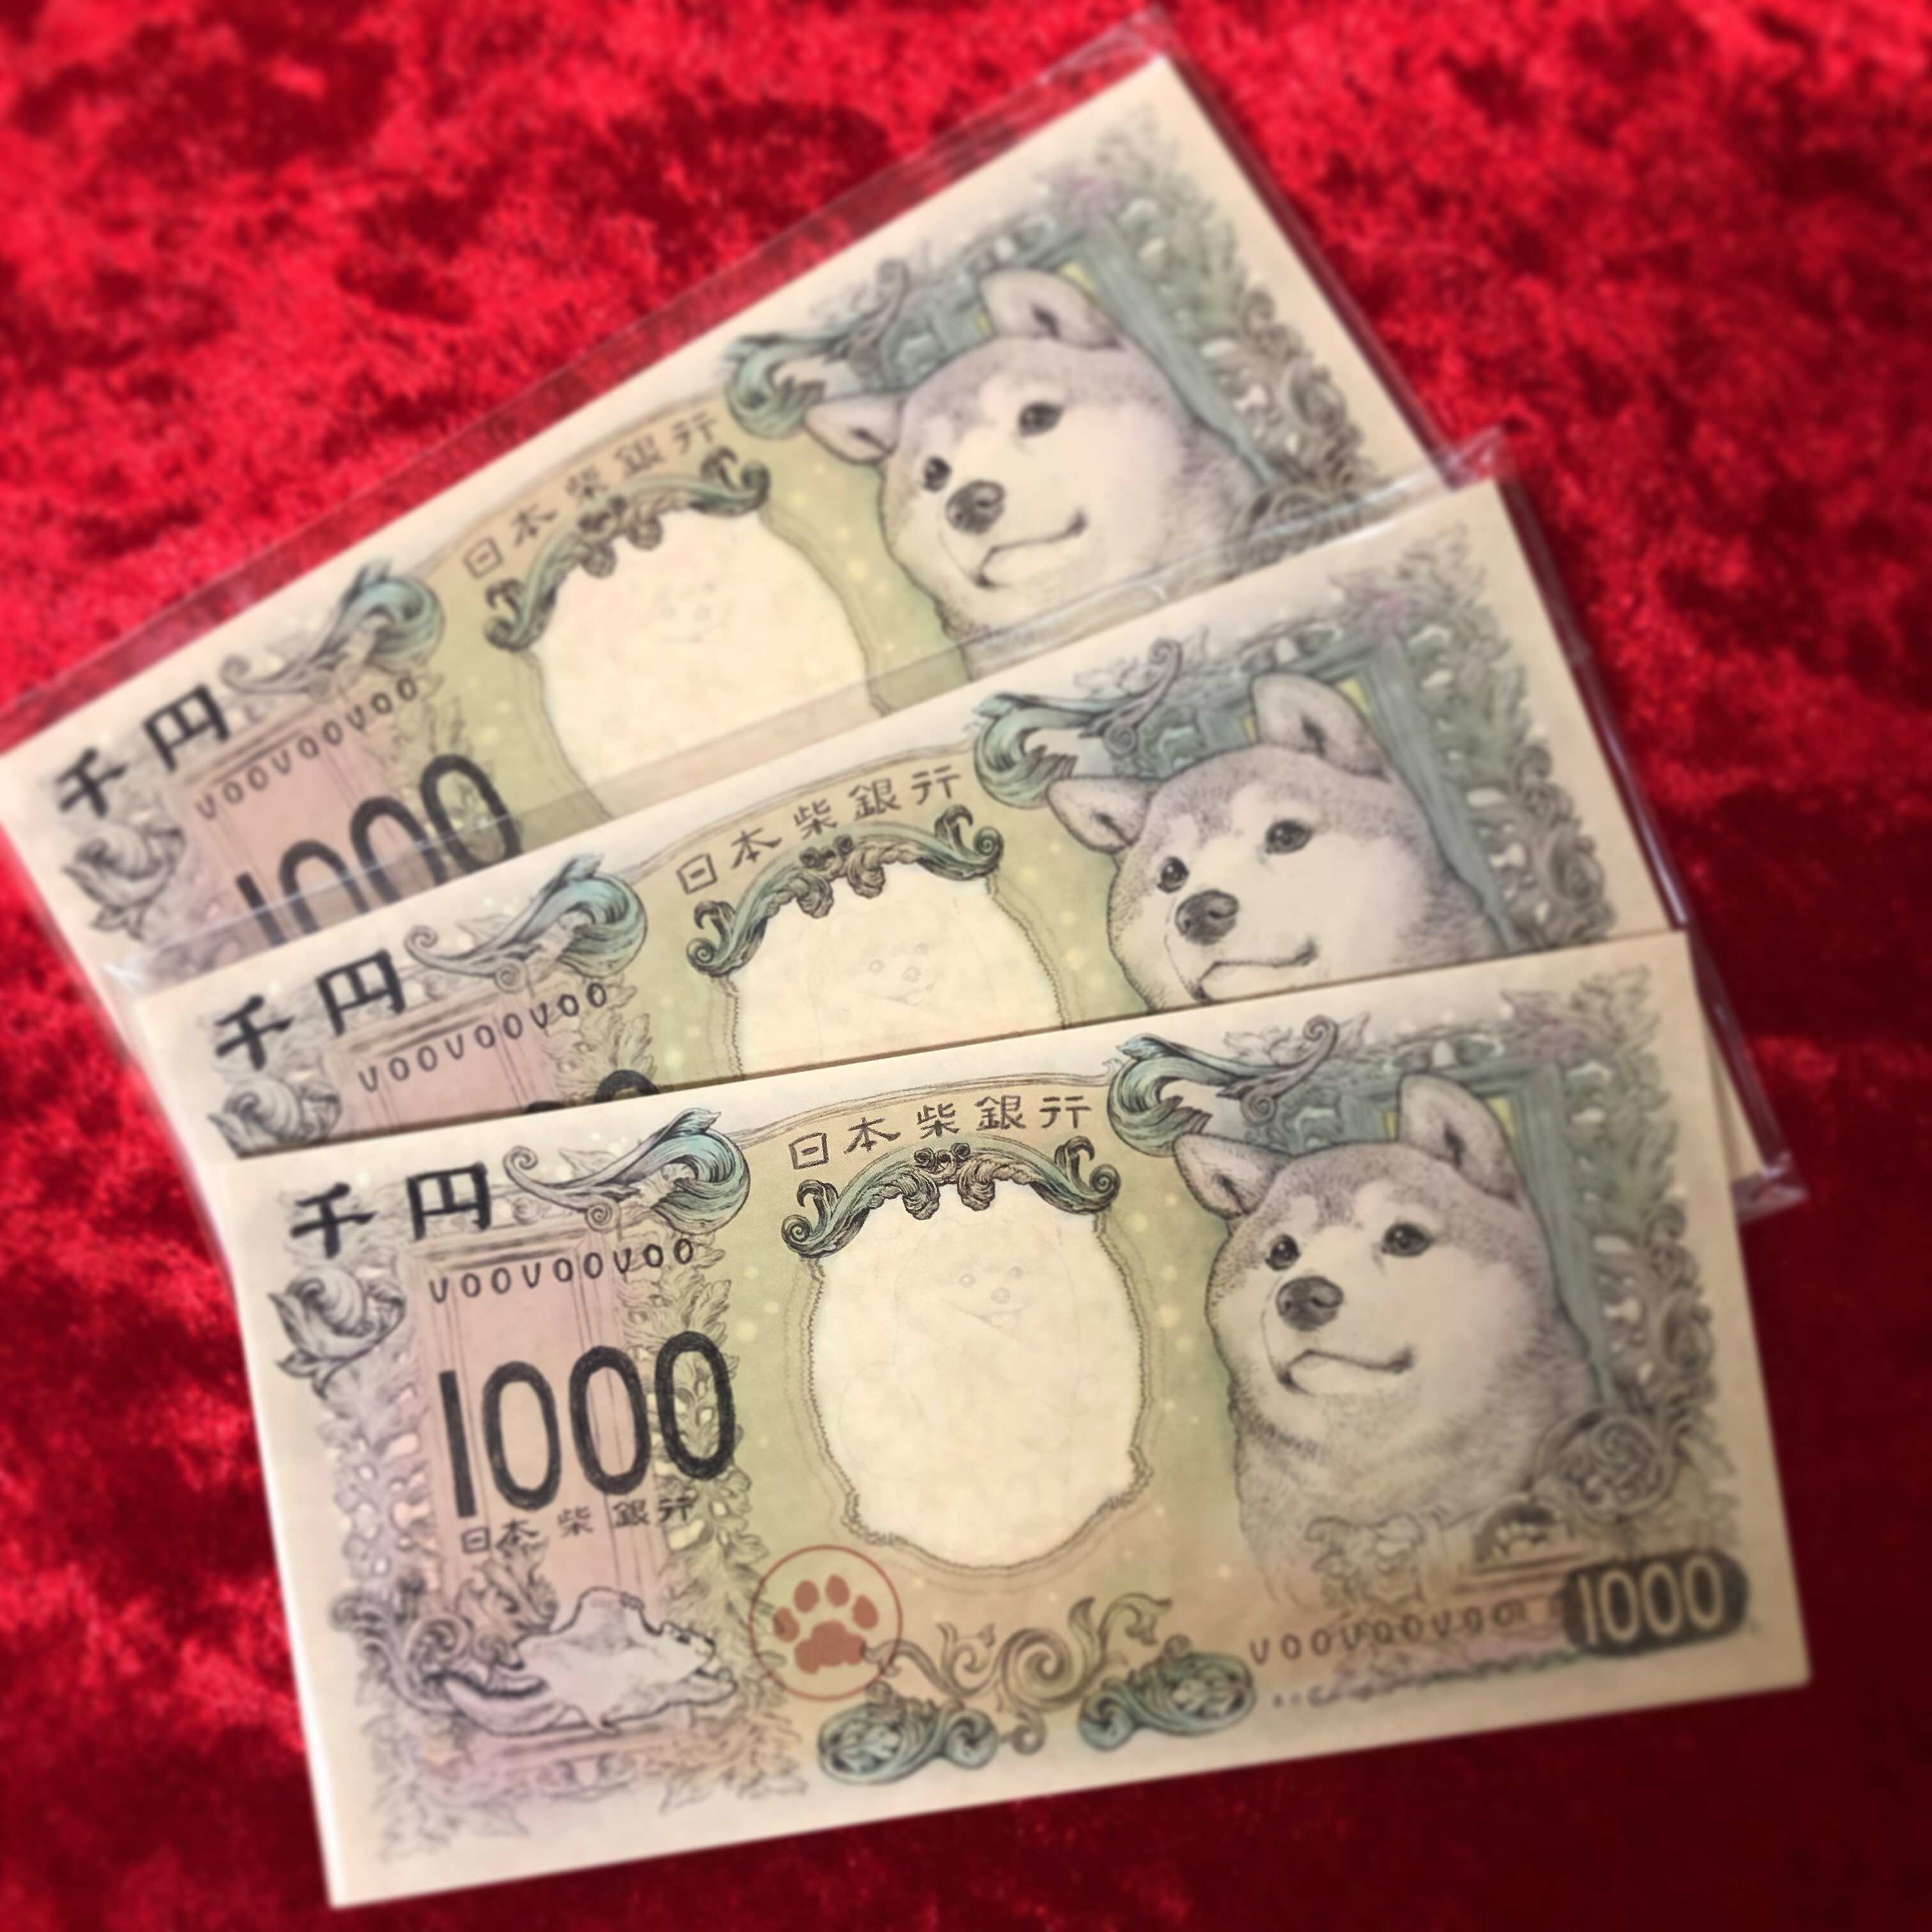 【大人気御礼】柴犬ワン×3メモ帳 / 猫ニャン×3メモ帳セット販売開始のお知らせ